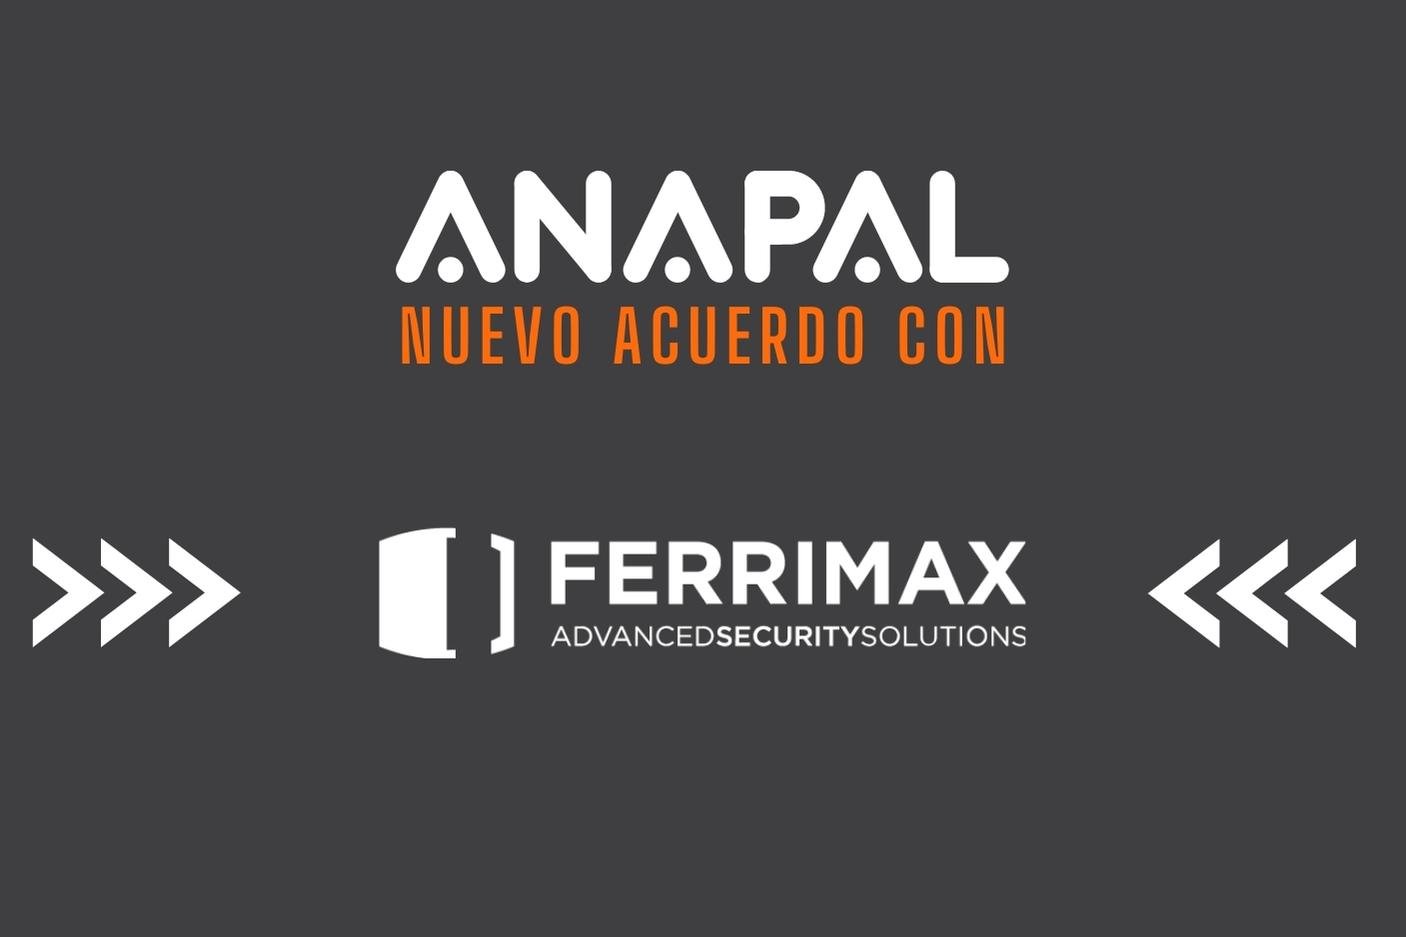 ferrimax nuevo acuerdo con empresa - blog de ANAPAL